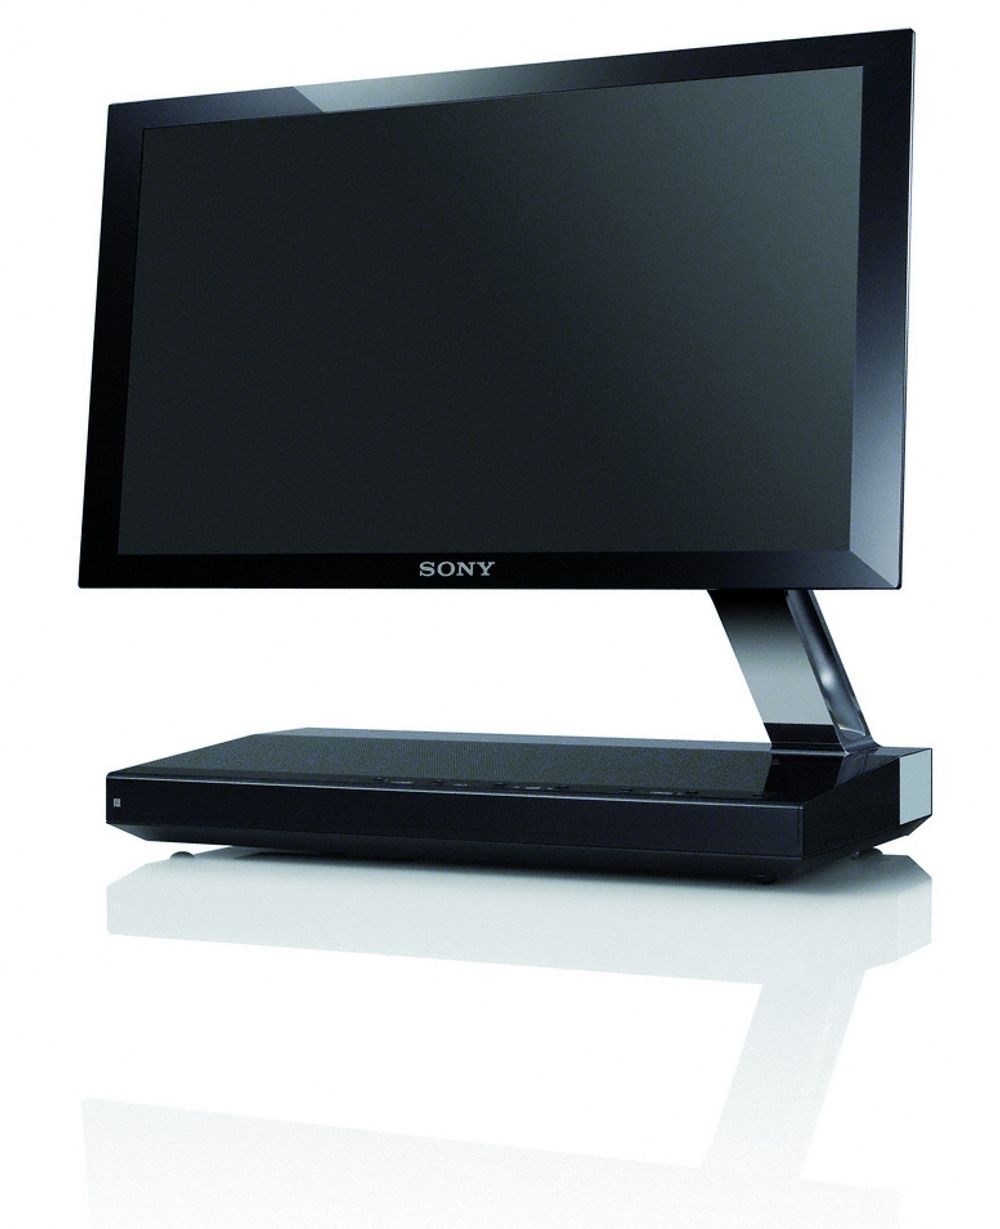 DYR OG ALENE:Sonys rådyre 11-tommers XEL1 TV er den eneste OLED-TV-en som har vært å få kjøpt.